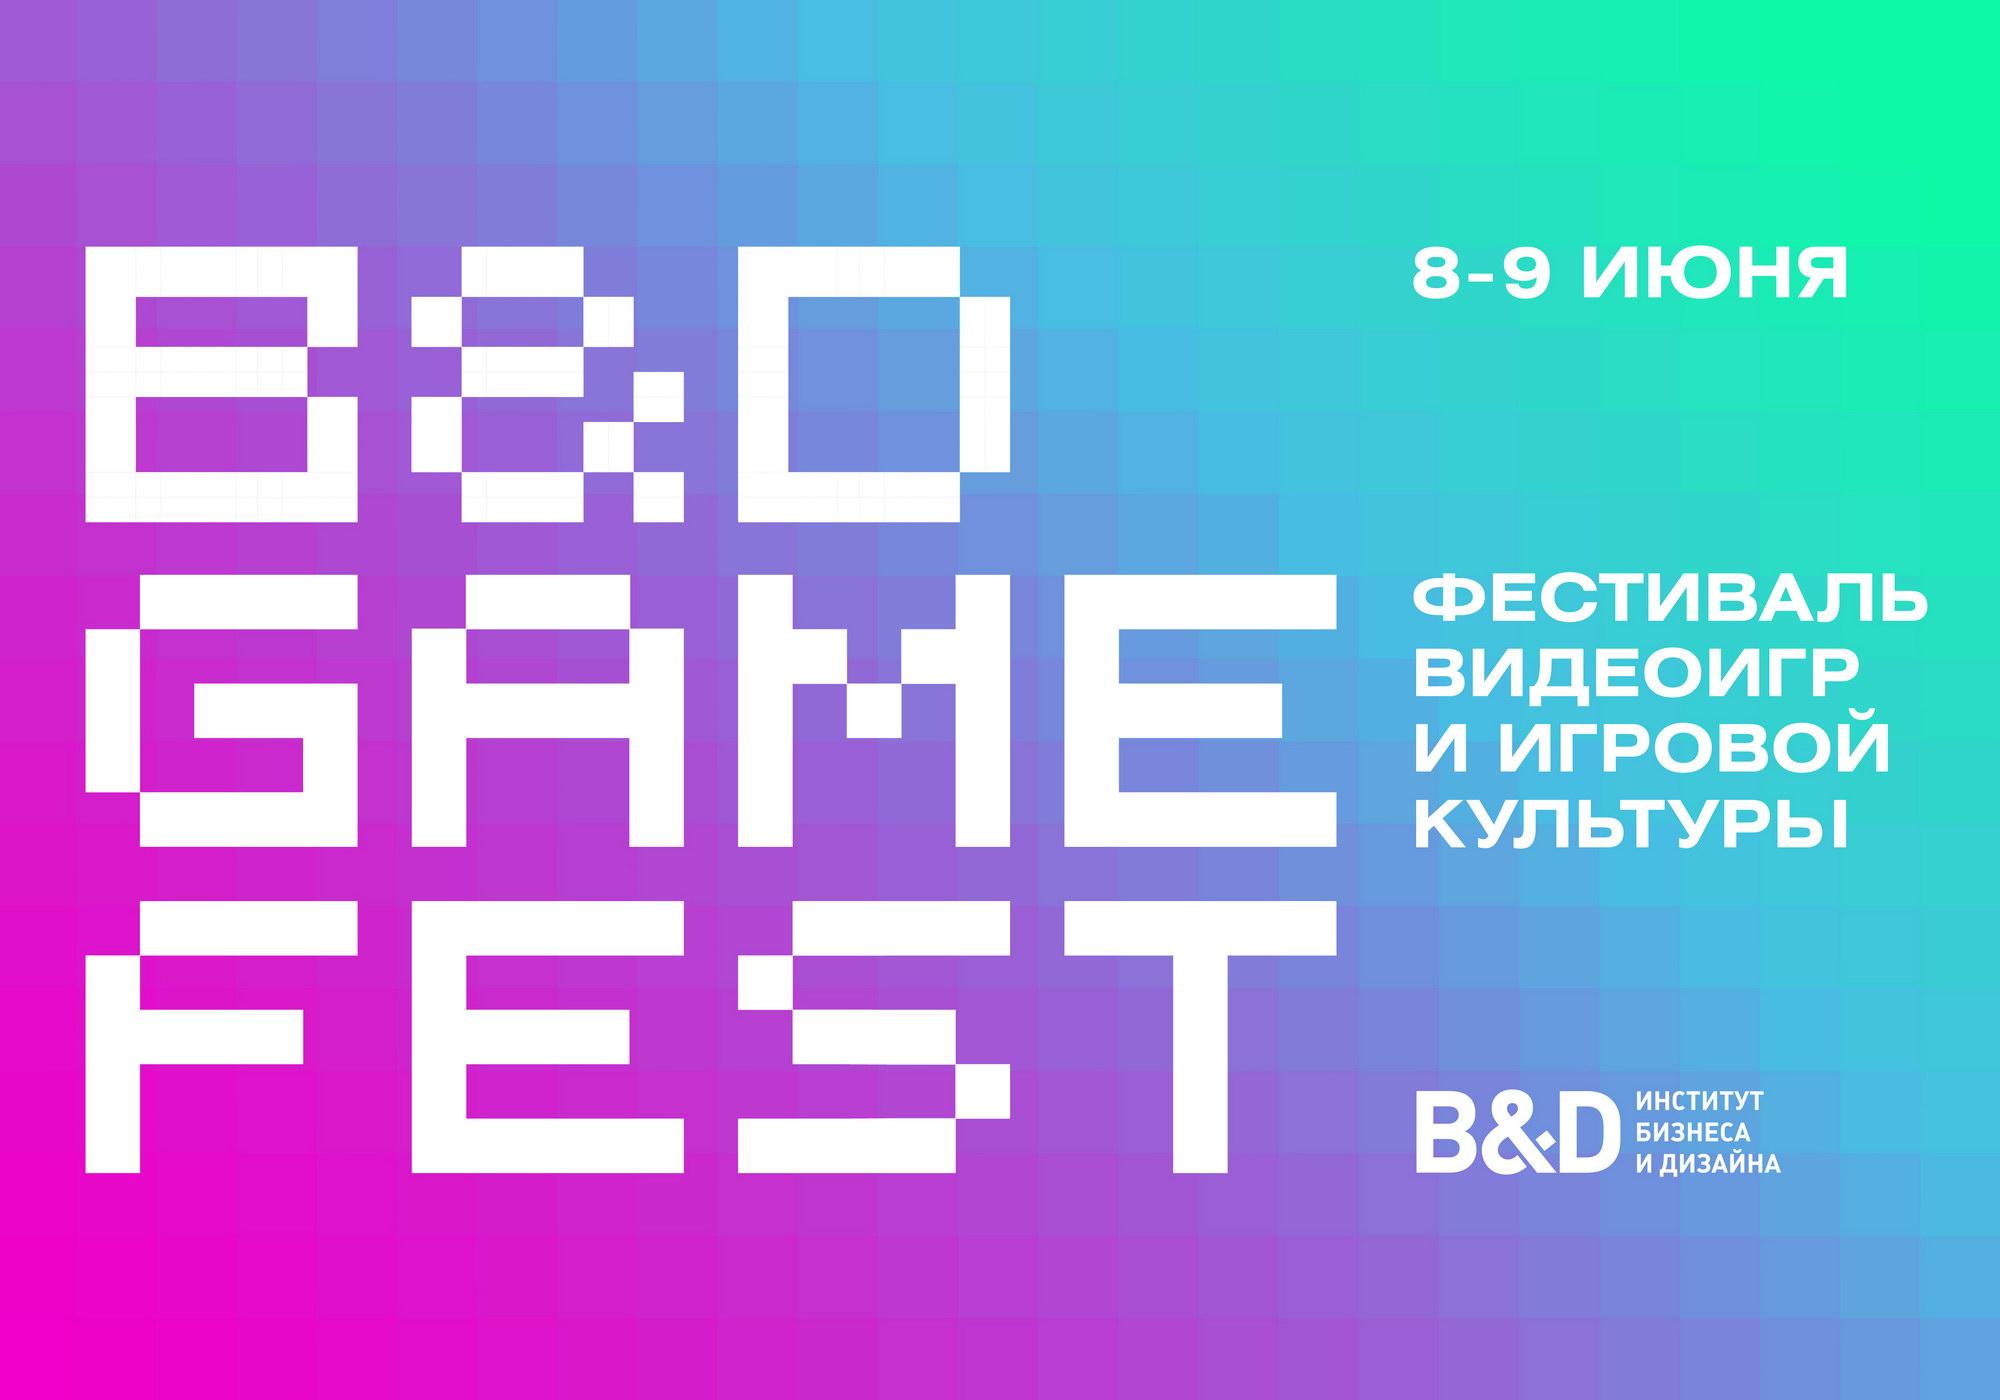 B&D GAME FEST. Фестиваль видеоигр и игровой культуры